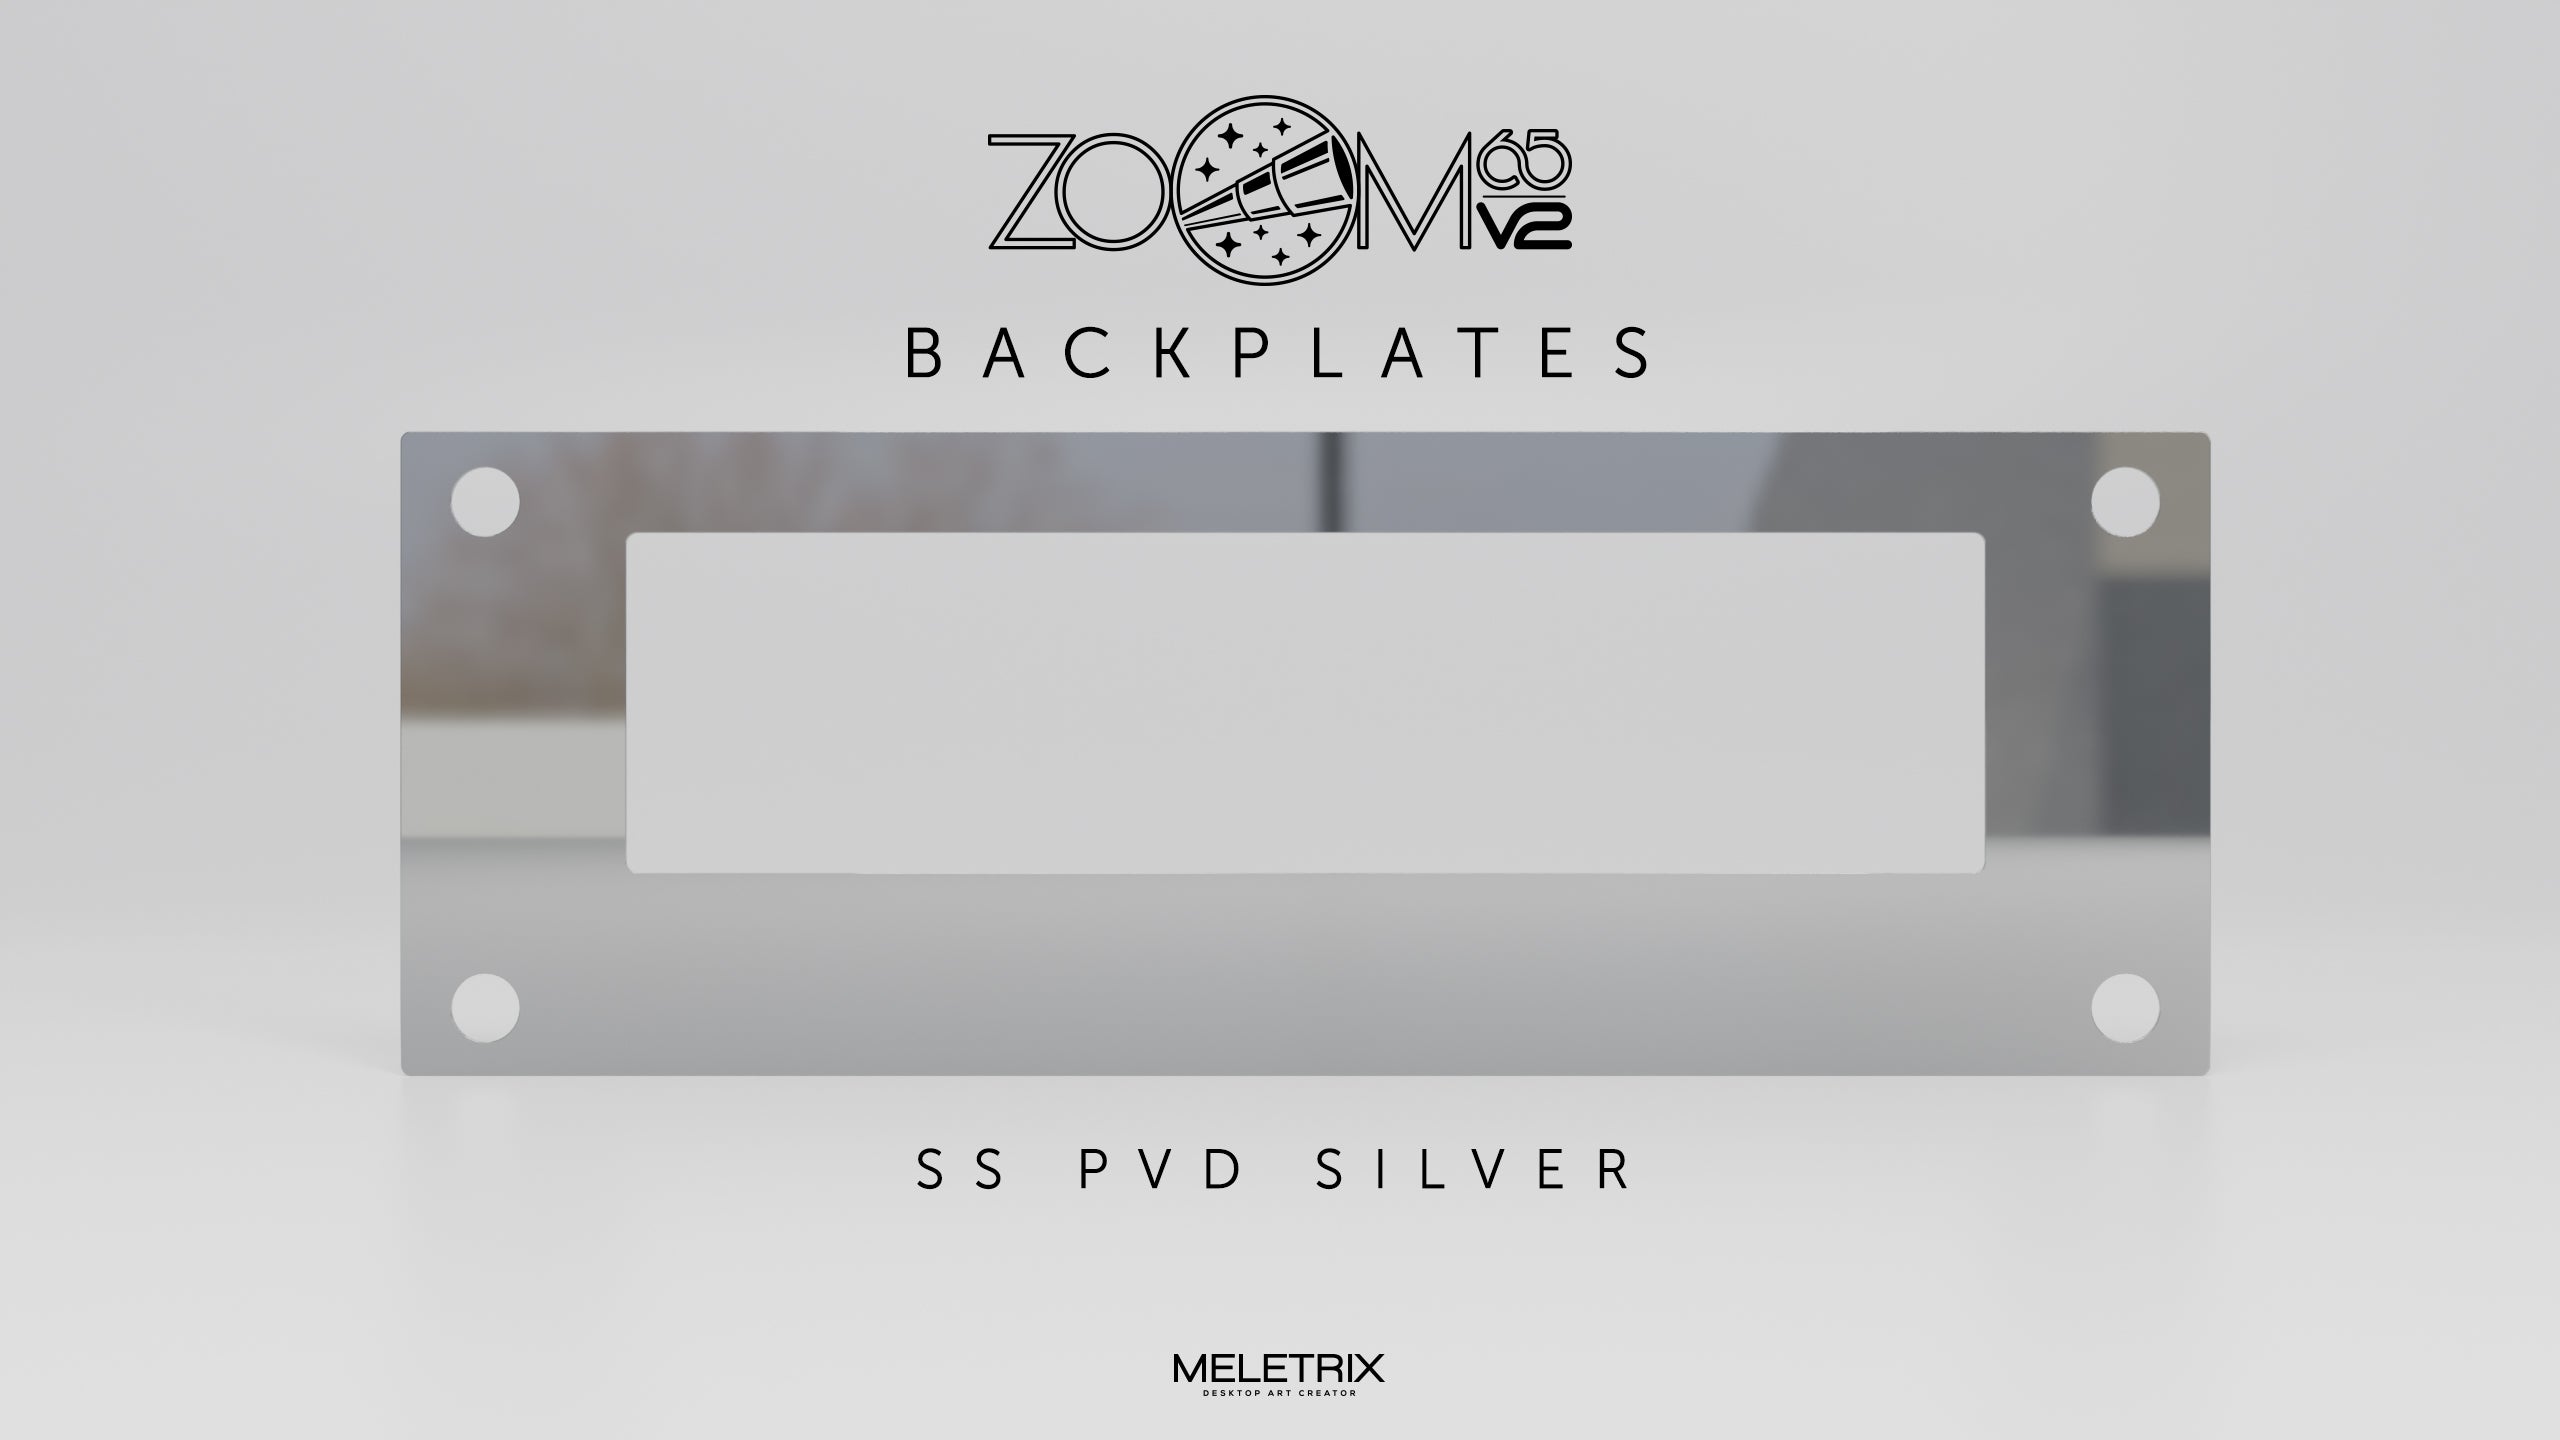 [Group Buy] ZOOM65 V2.5 Extra Back Plate Kit by Meletrix